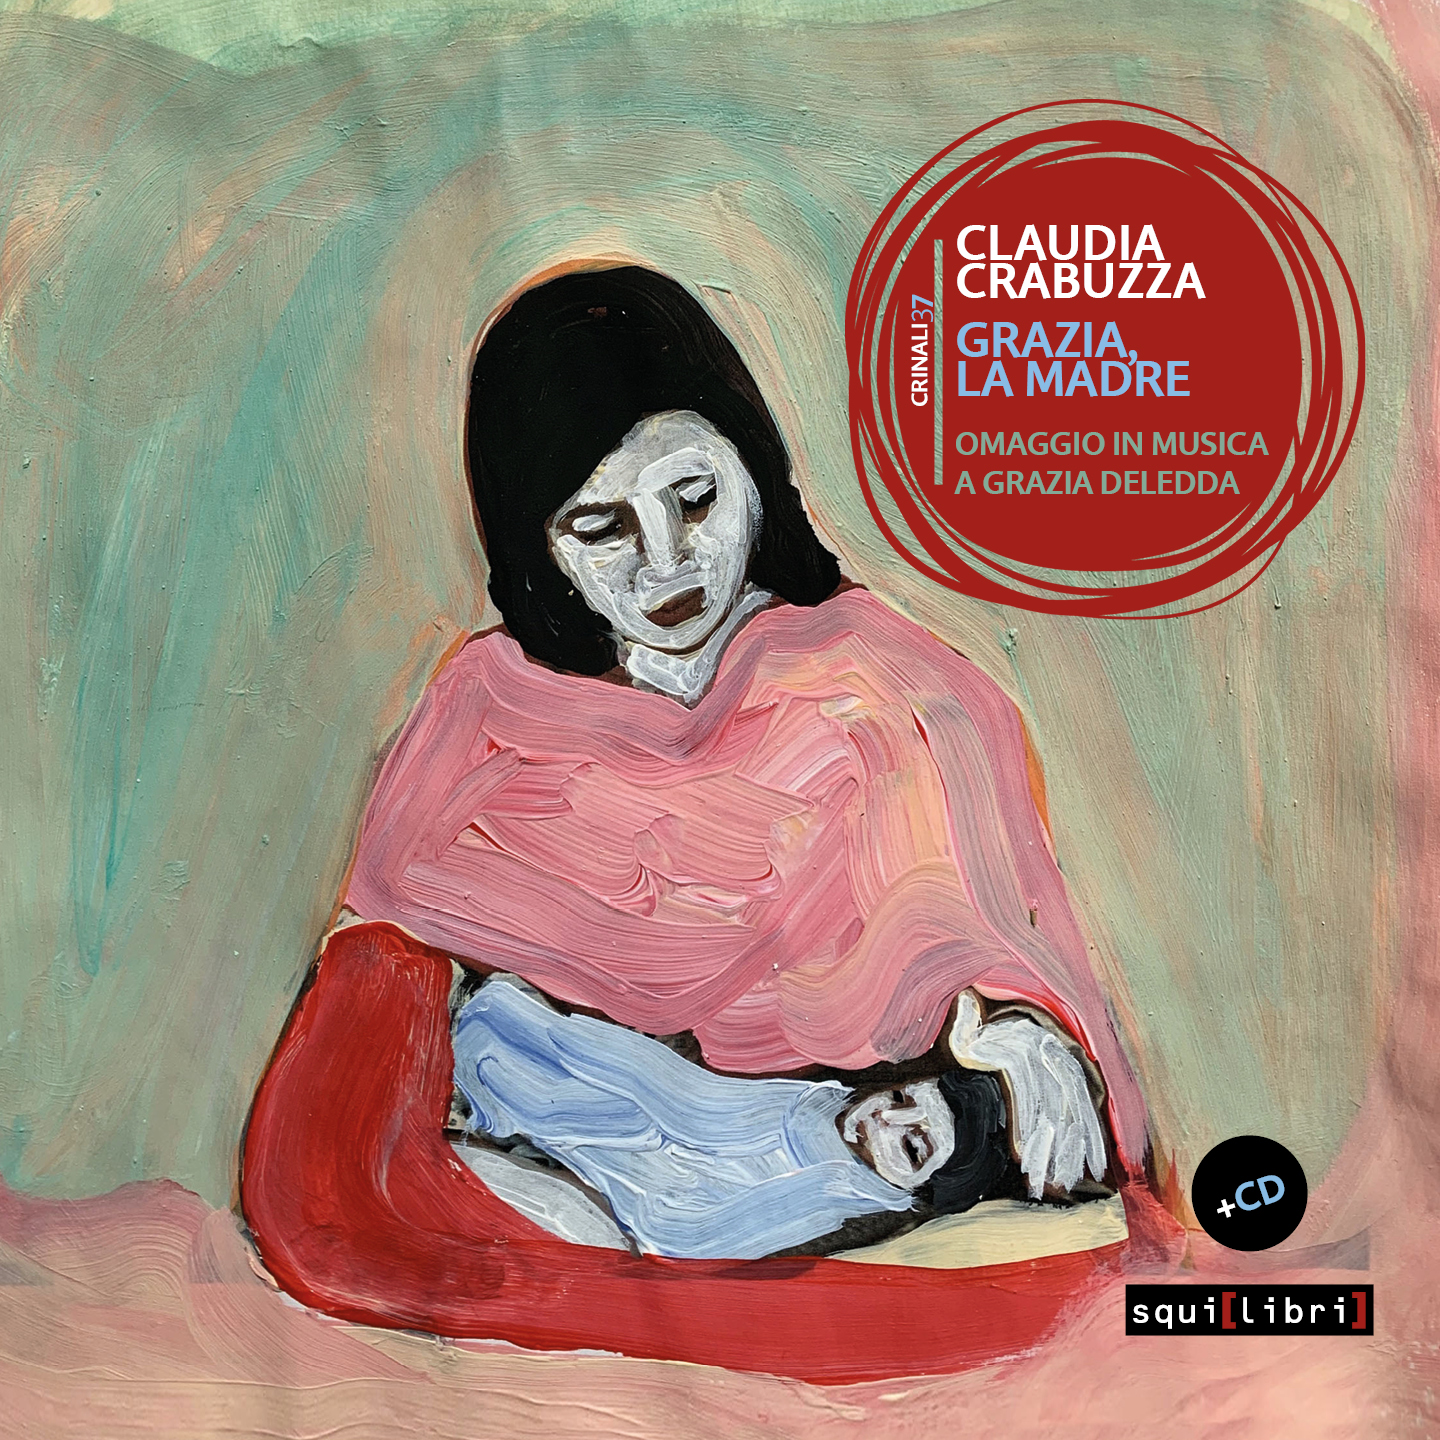 Grazia, la madre, un cd-book di Claudia Crabuzza per un omaggio in musica a Grazia Deledda